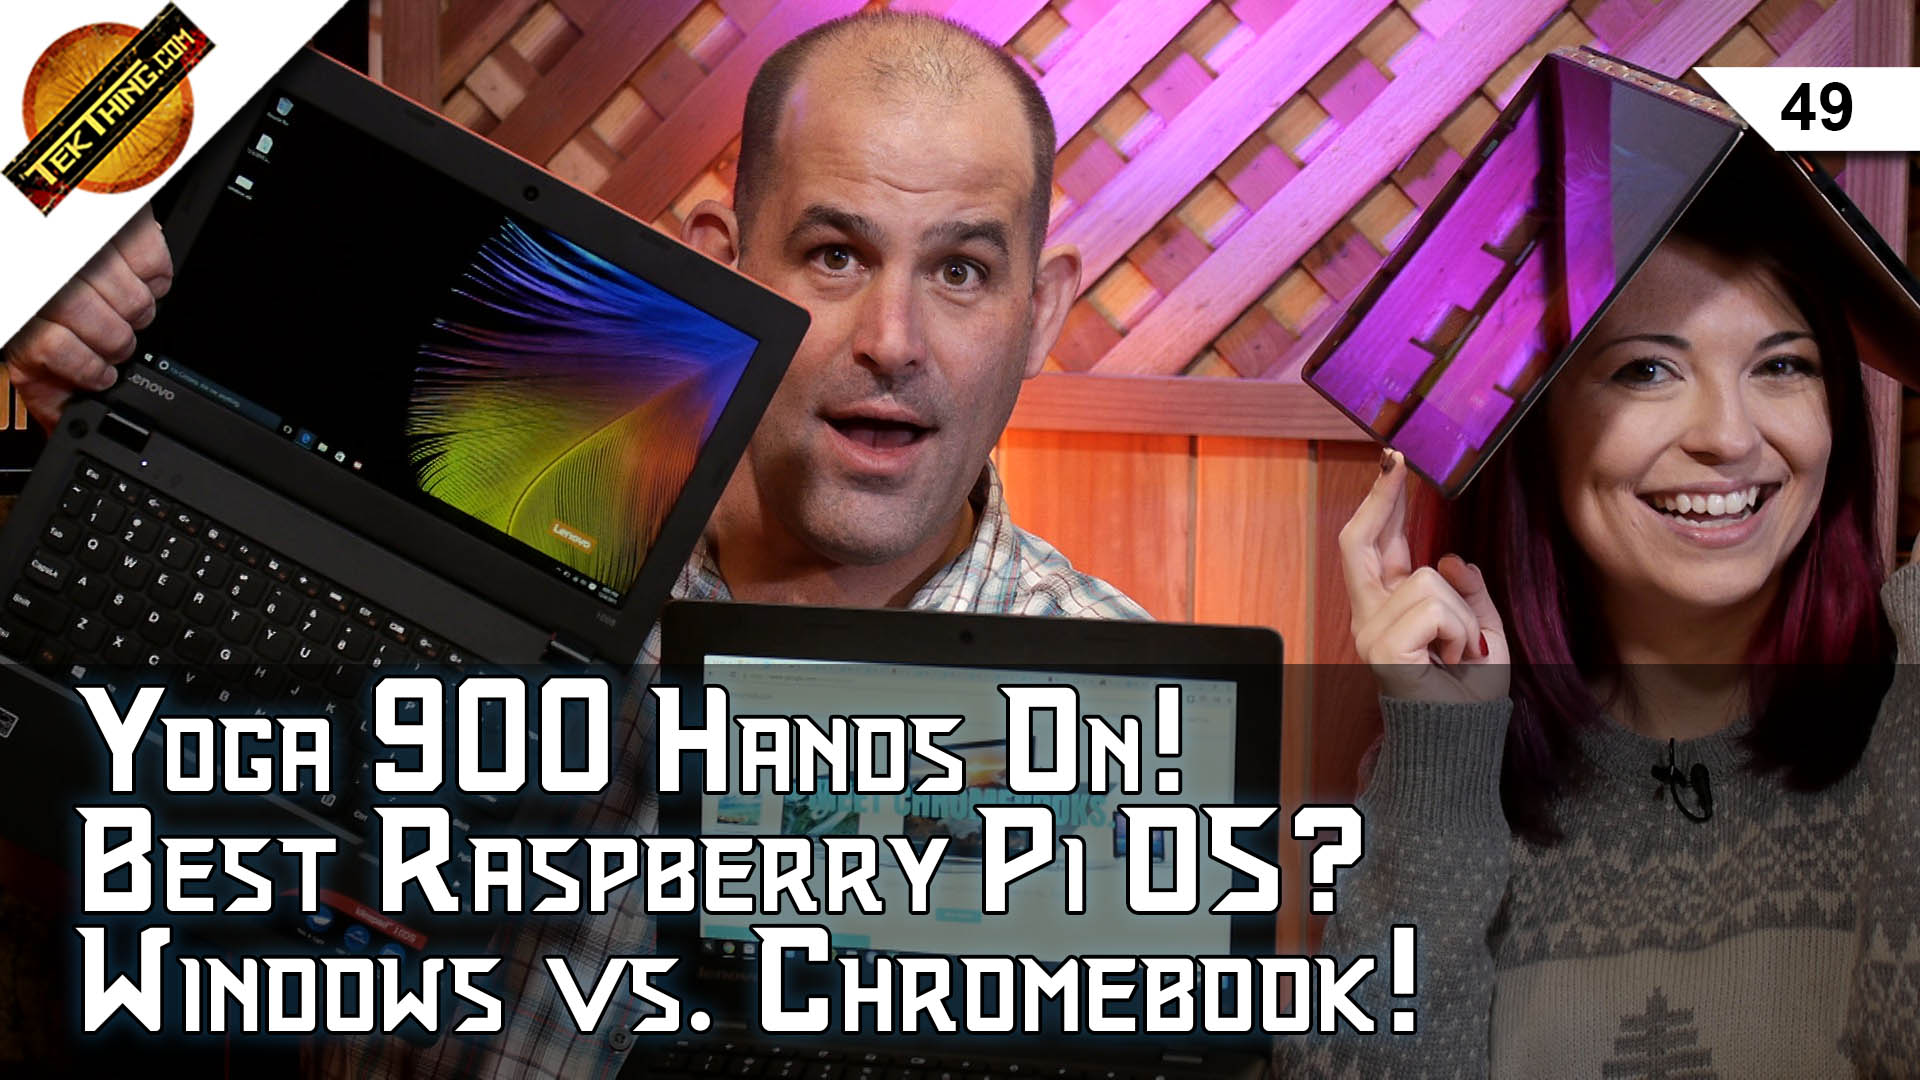 TekThing 49: $200 Laptops Windows vs. Chromebook! Lenovo Yoga 900 Review, Best Raspberry Pi OS, Update Windows!